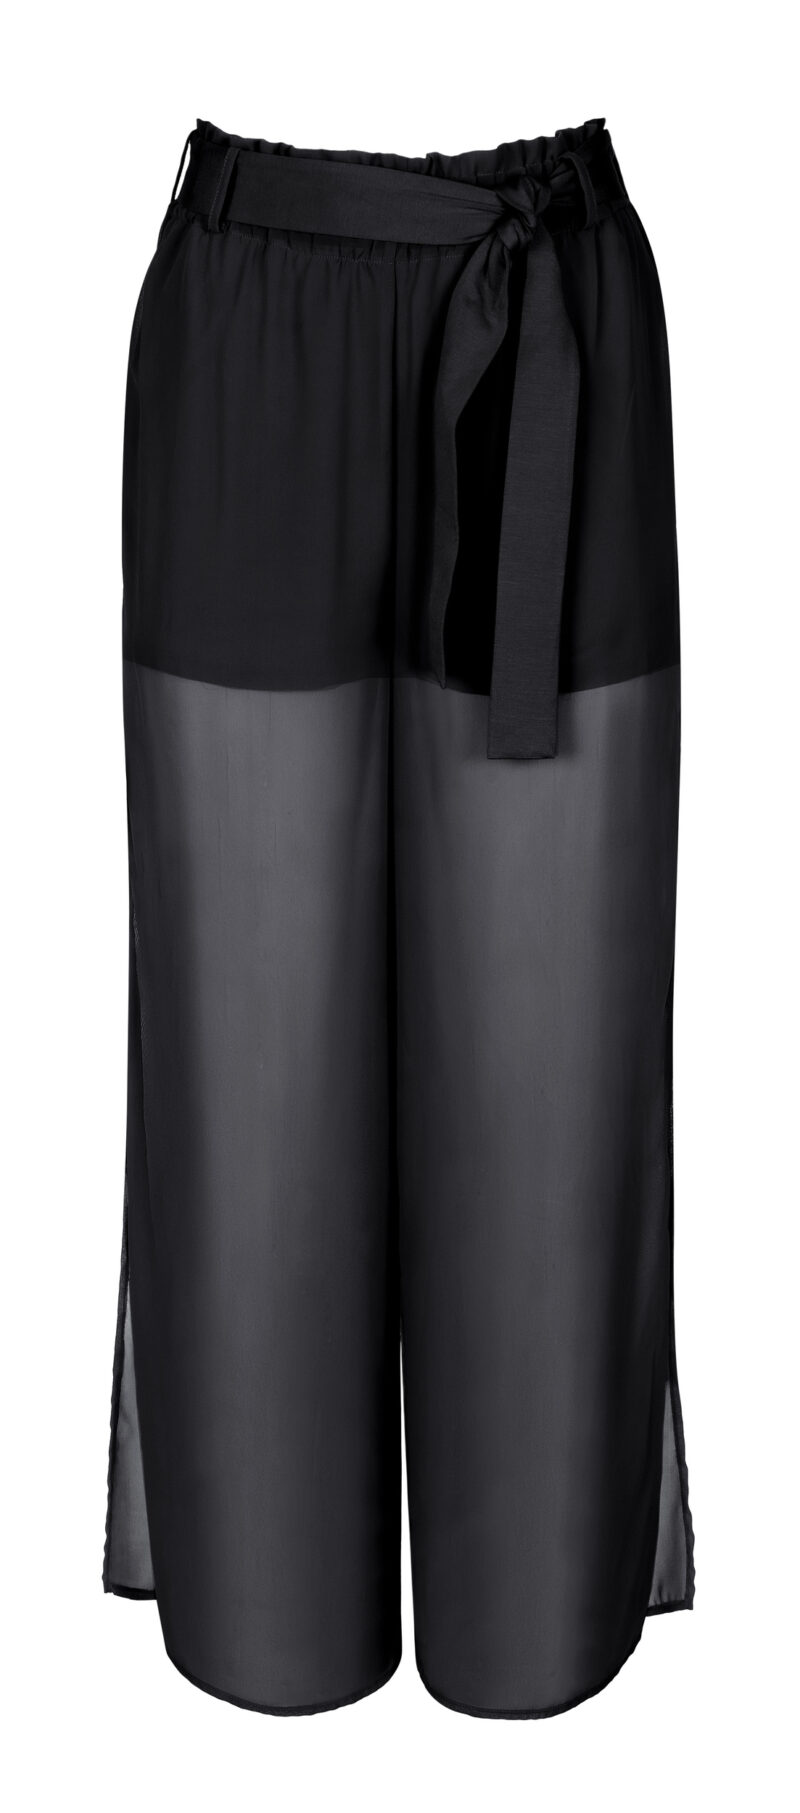 Lingerie By M - Lisca Swim ISOLLA ROSSA Broek 02 zwart - Creëer een stijlvolle look met de Lisca broek uit SERIE ISOLLA ROSSA. Geniet van stijl en comfort.